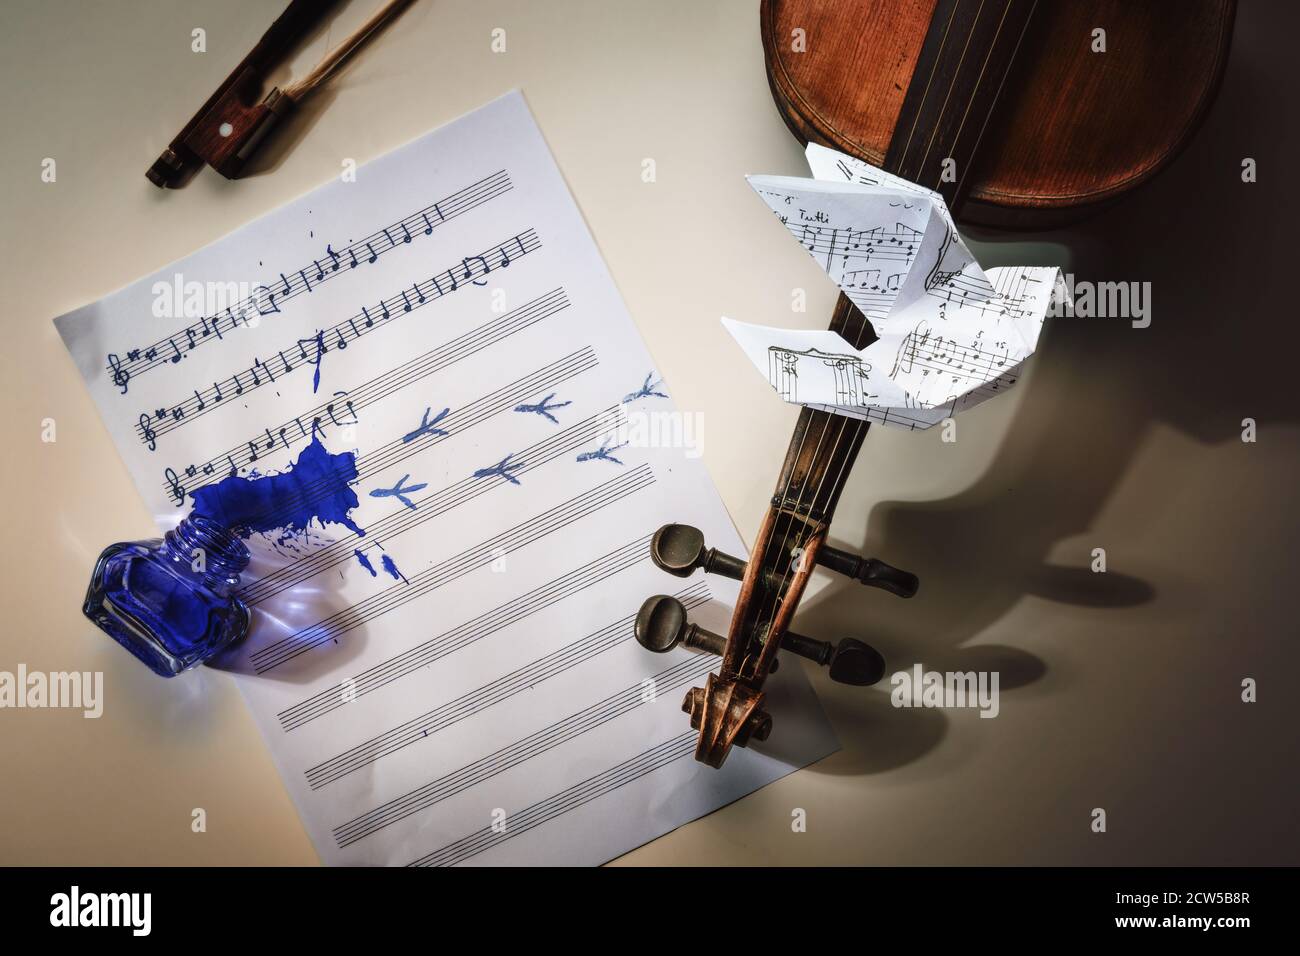 Geige und ein Notenblatt mit begonnenen handgeschriebenen Liedern Alle Vögel sind schon hier, umgedrehtes Tintenfass, Vogelfußabdrücke und eine Origami-Taube flyi Stockfoto